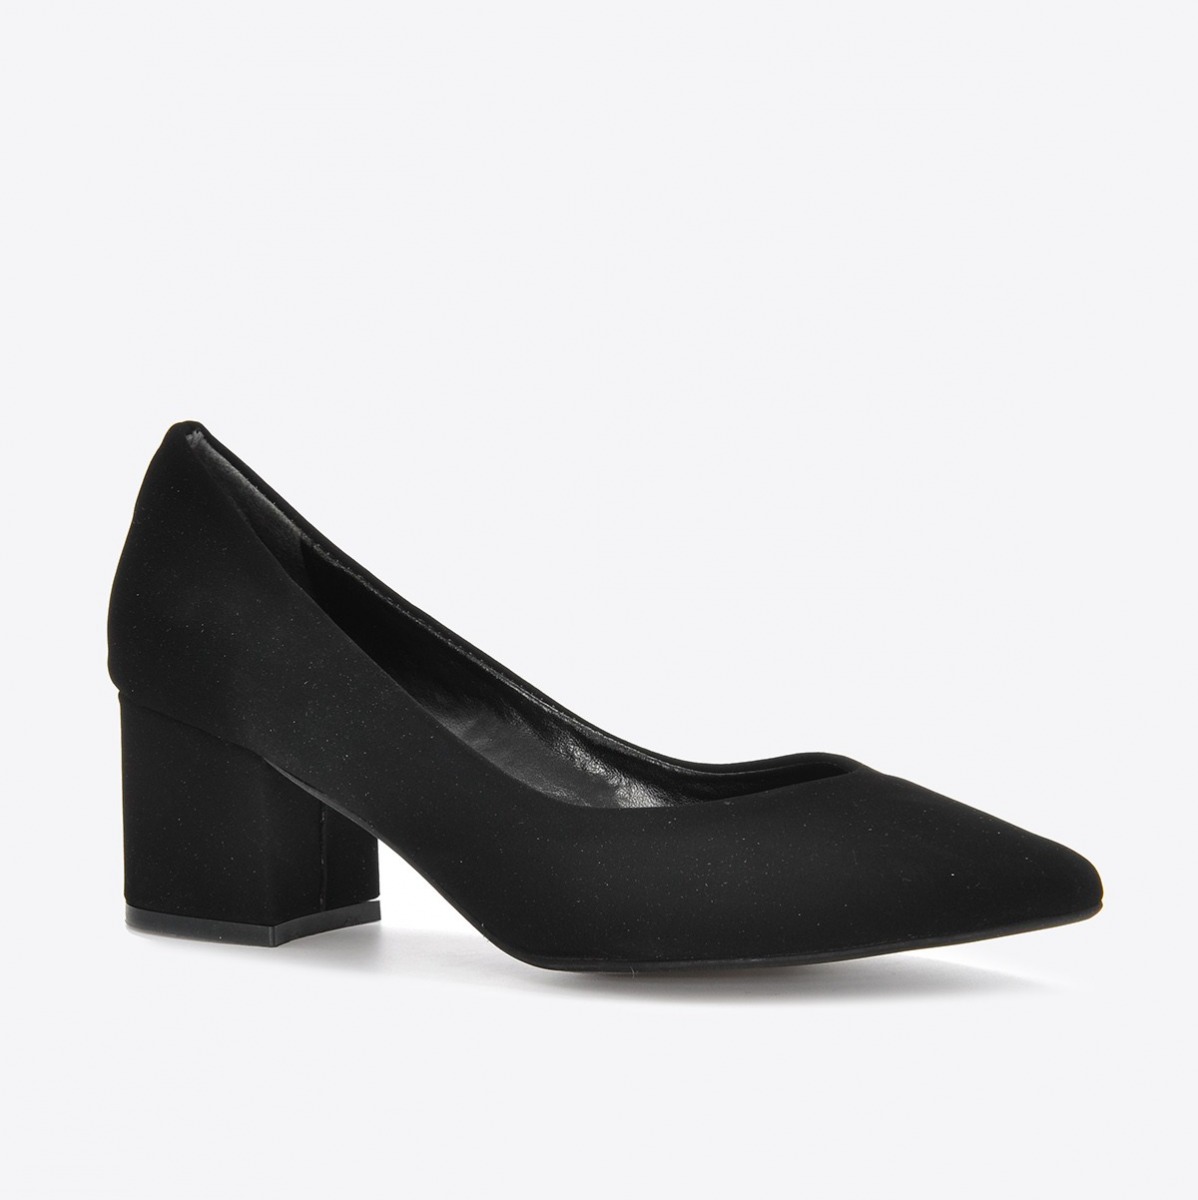 Flo Kadın Siyah Nubuk Klasik Topuklu Ayakkabı VZN21-040Y. 1